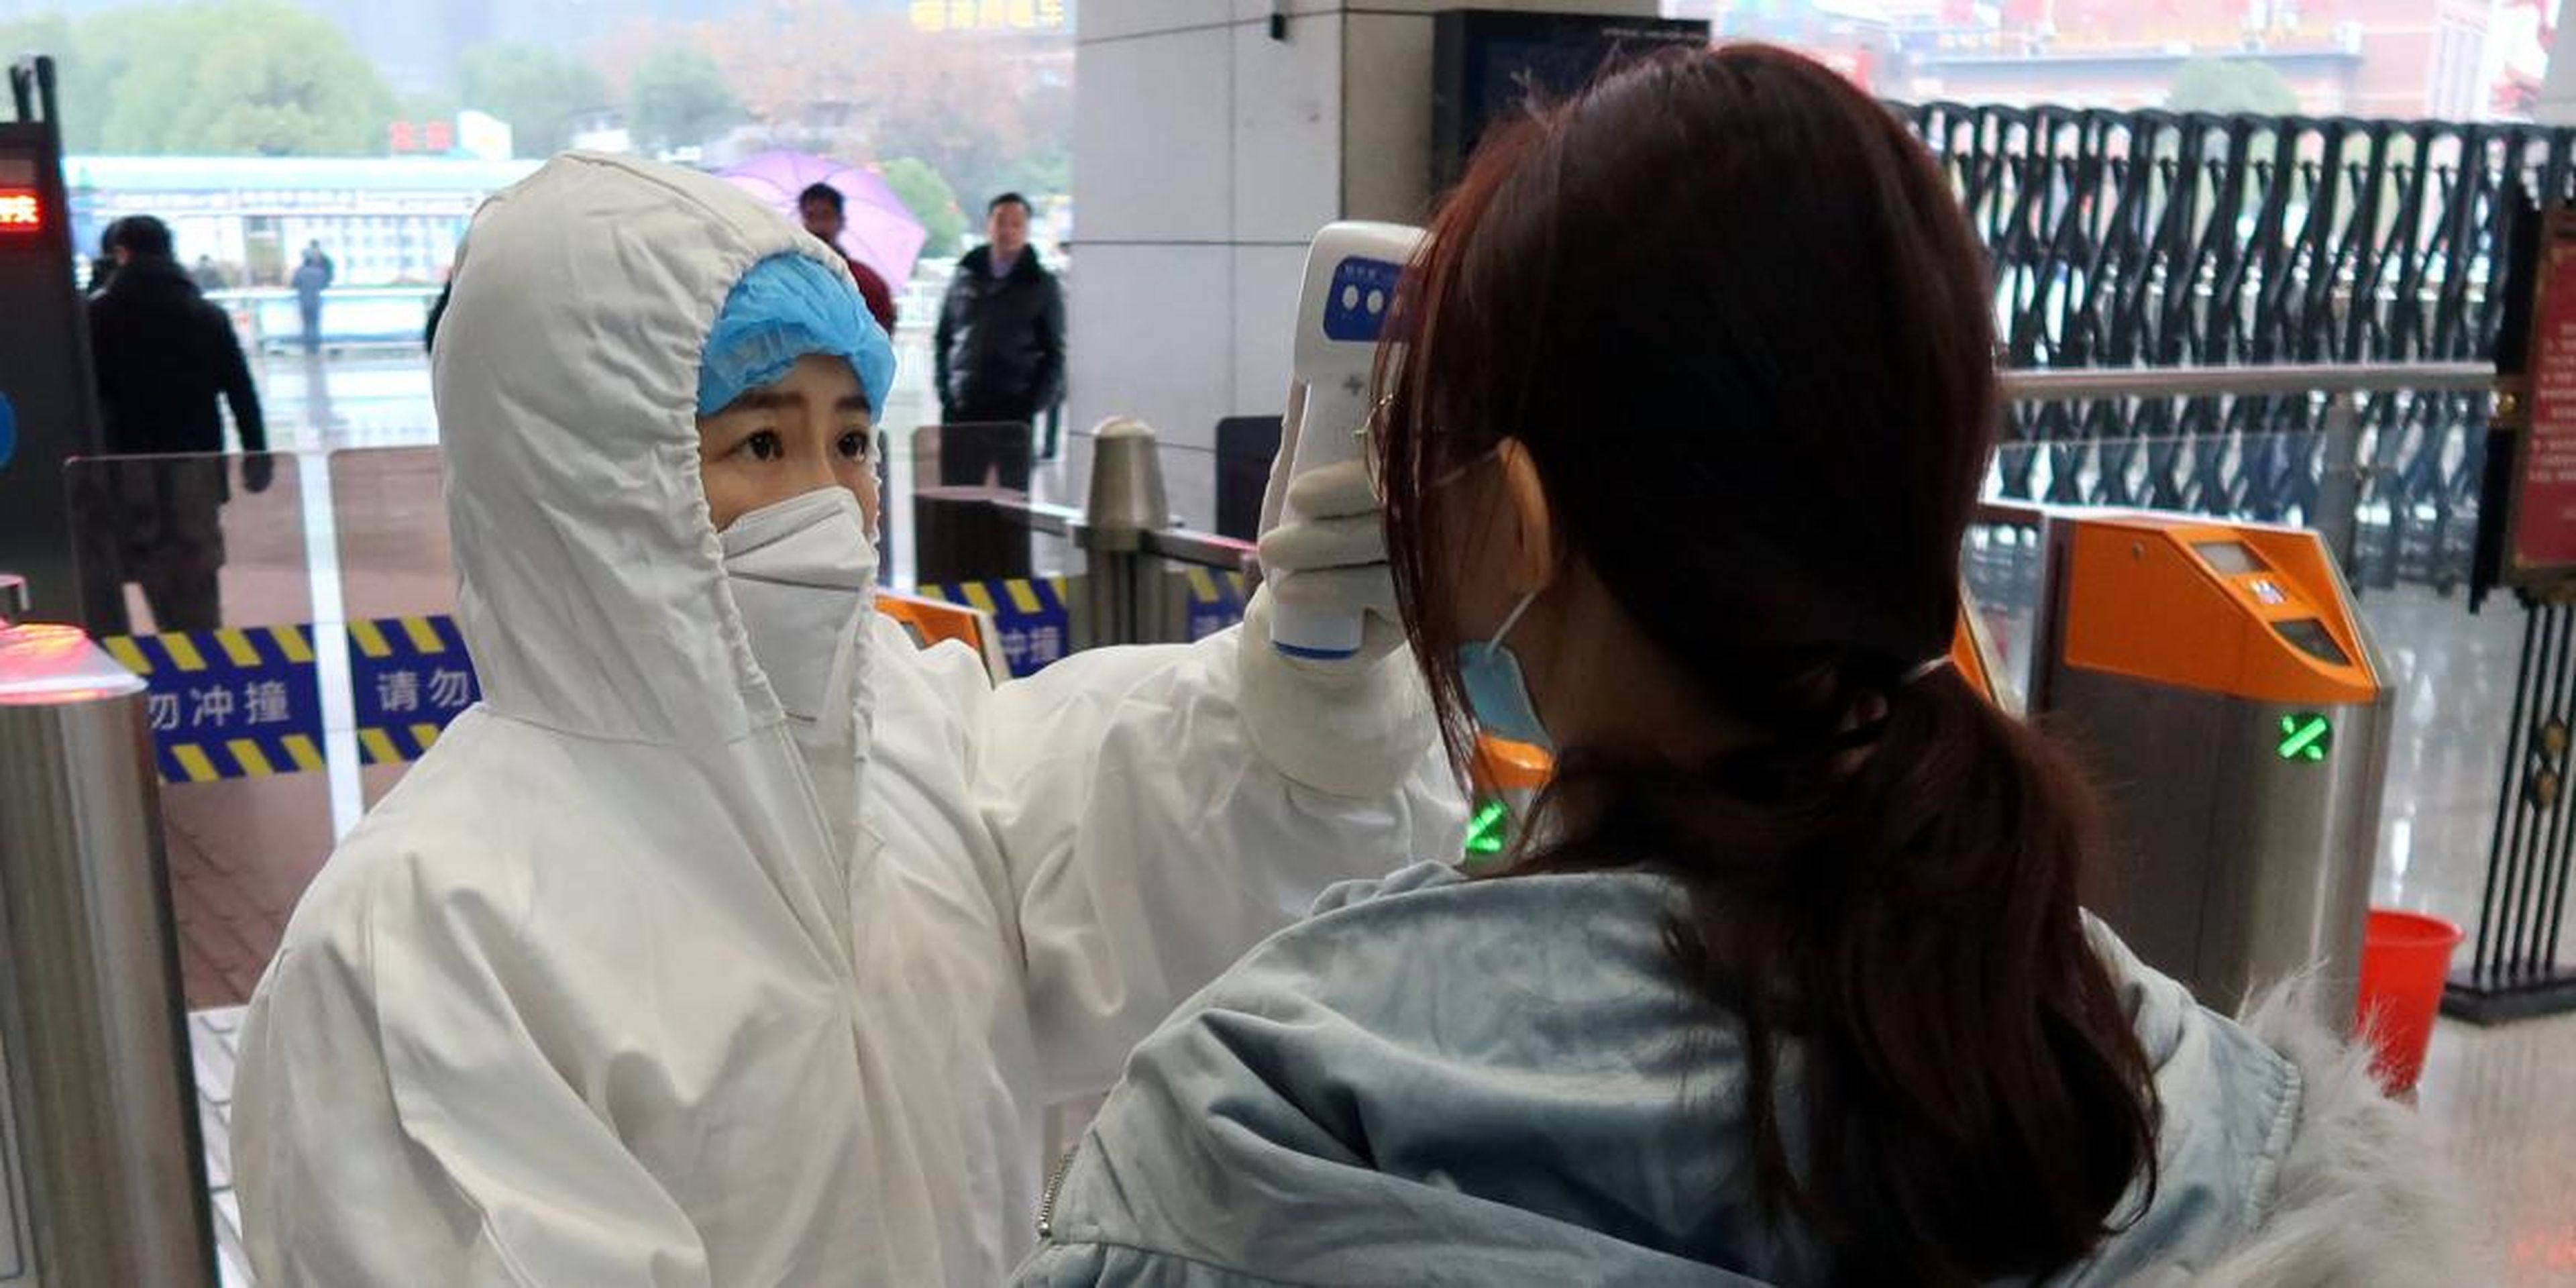 Un trabajador con traje protector controla la temperatura de pasajeros antes de entrar a una estación de Wuhan el 24 de enero de 2020.